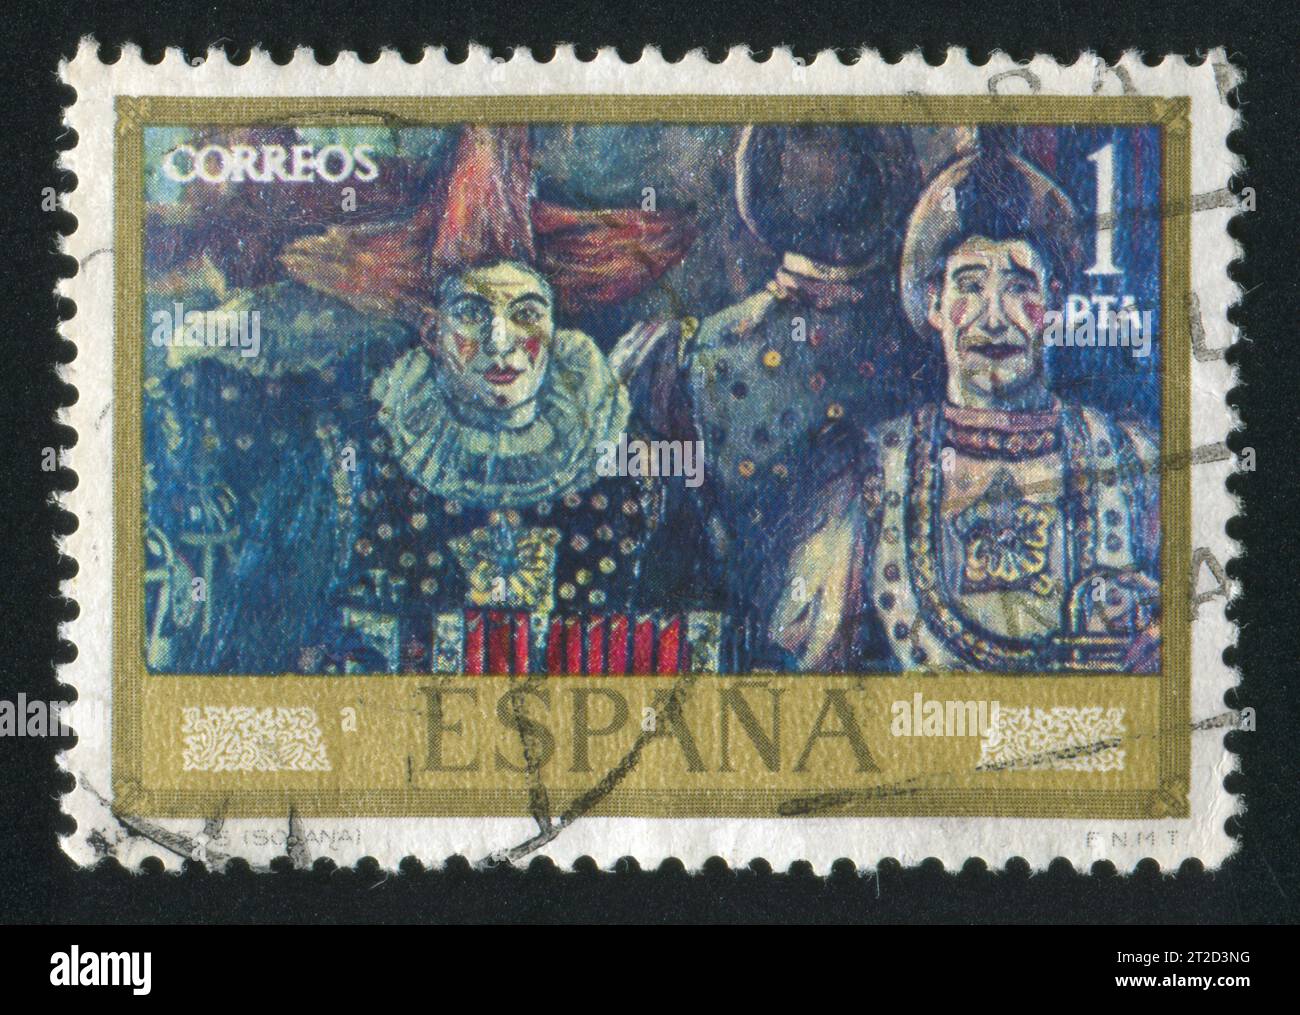 ESPAGNE - CIRCA 1972 : timbre imprimé par l'Espagne, montre la peinture 'clownss' de Gutierrez Solana, circa 1972 Banque D'Images